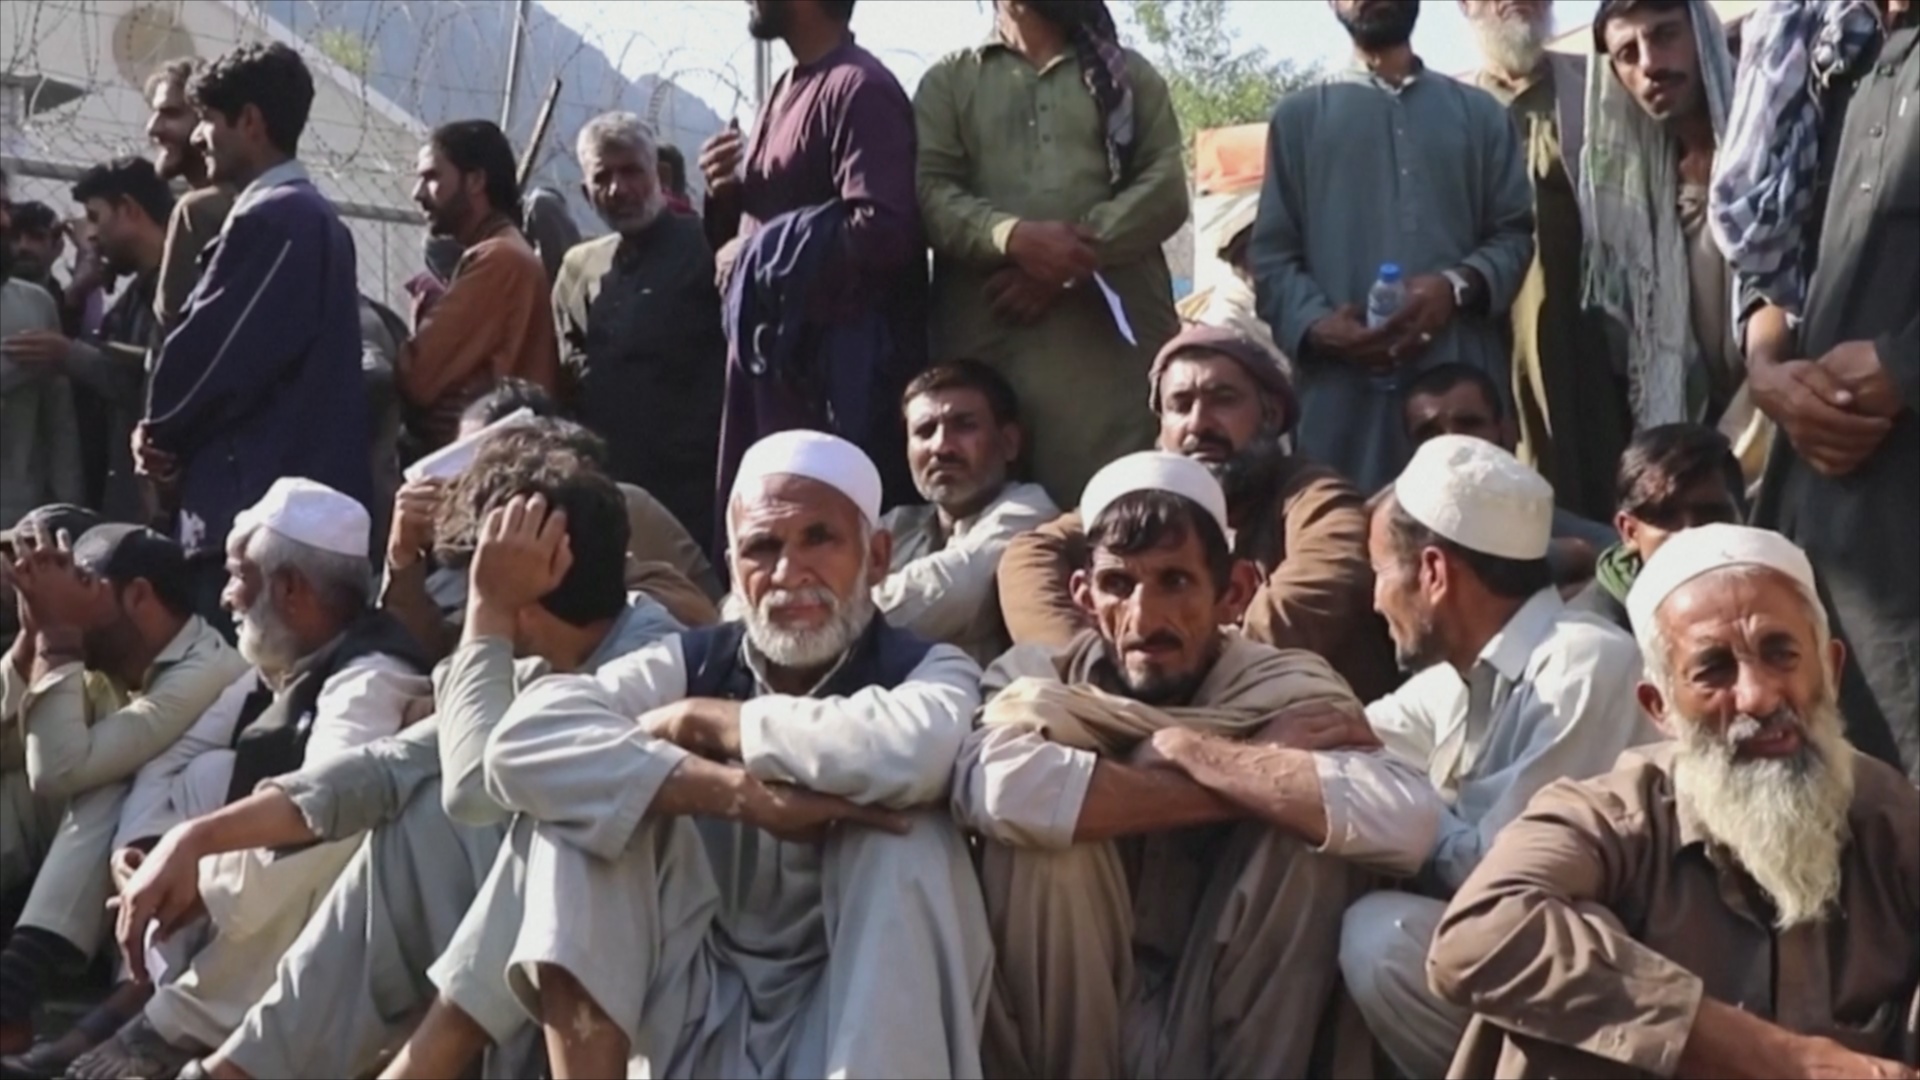 10 000 человек ежедневно пересекают границу Пакистана, возвращаясь в Афганистан